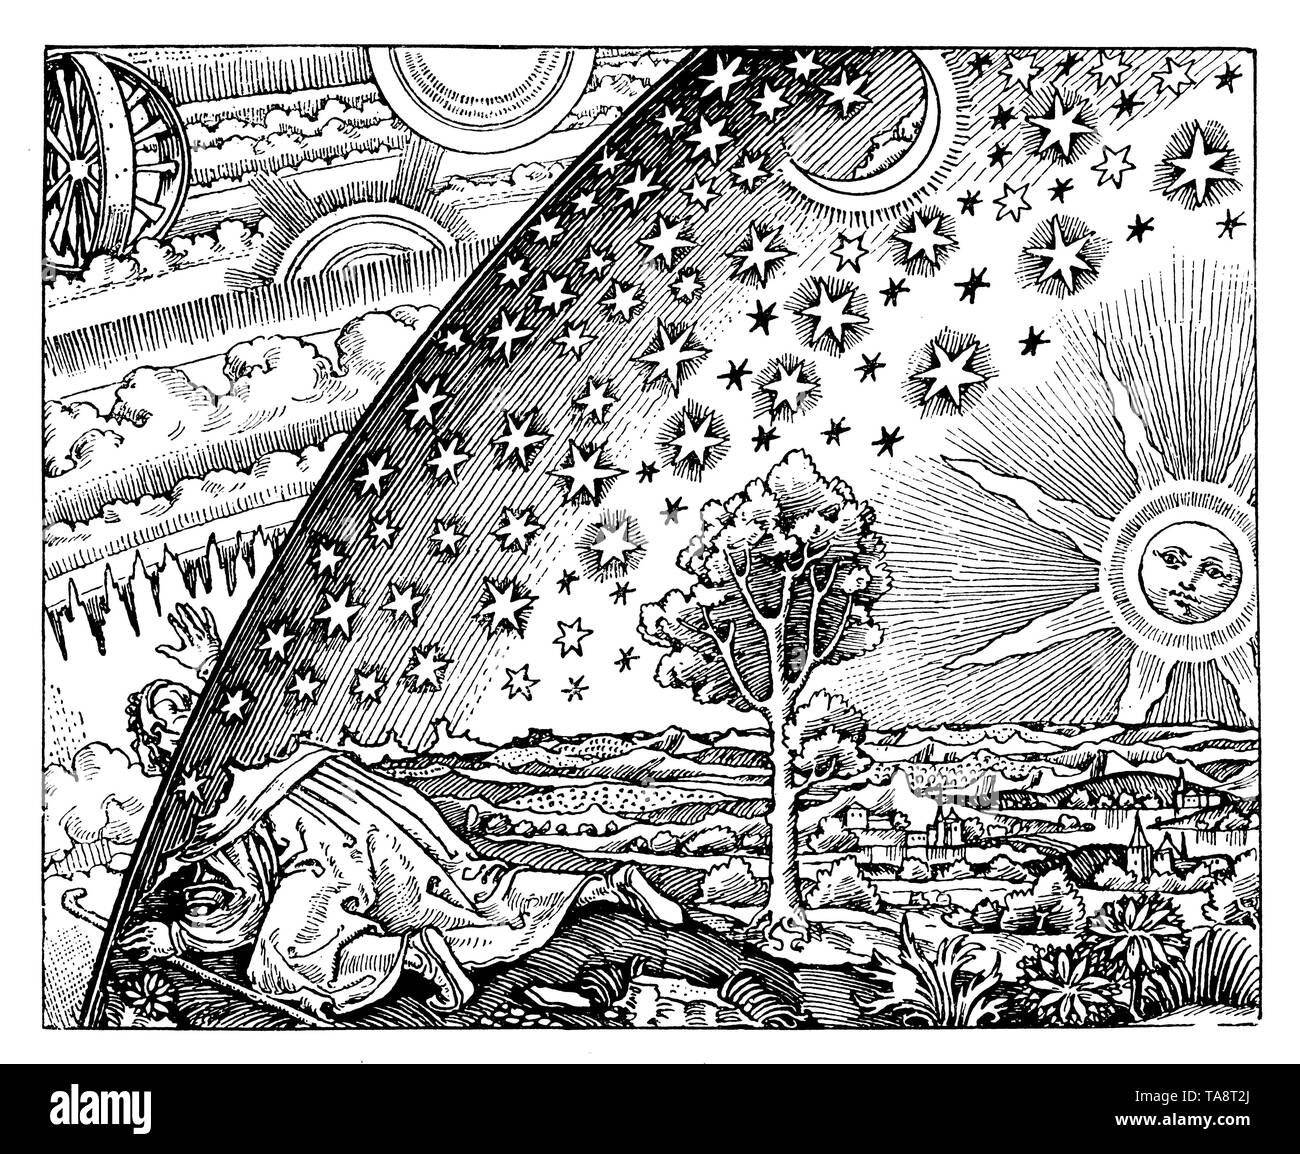 Mittelalterliche Darstellung der Welt. Nach Flammarion's 'Astronomie'.,, (populärwissenschaftlichen Buch, 1902) Stockfoto